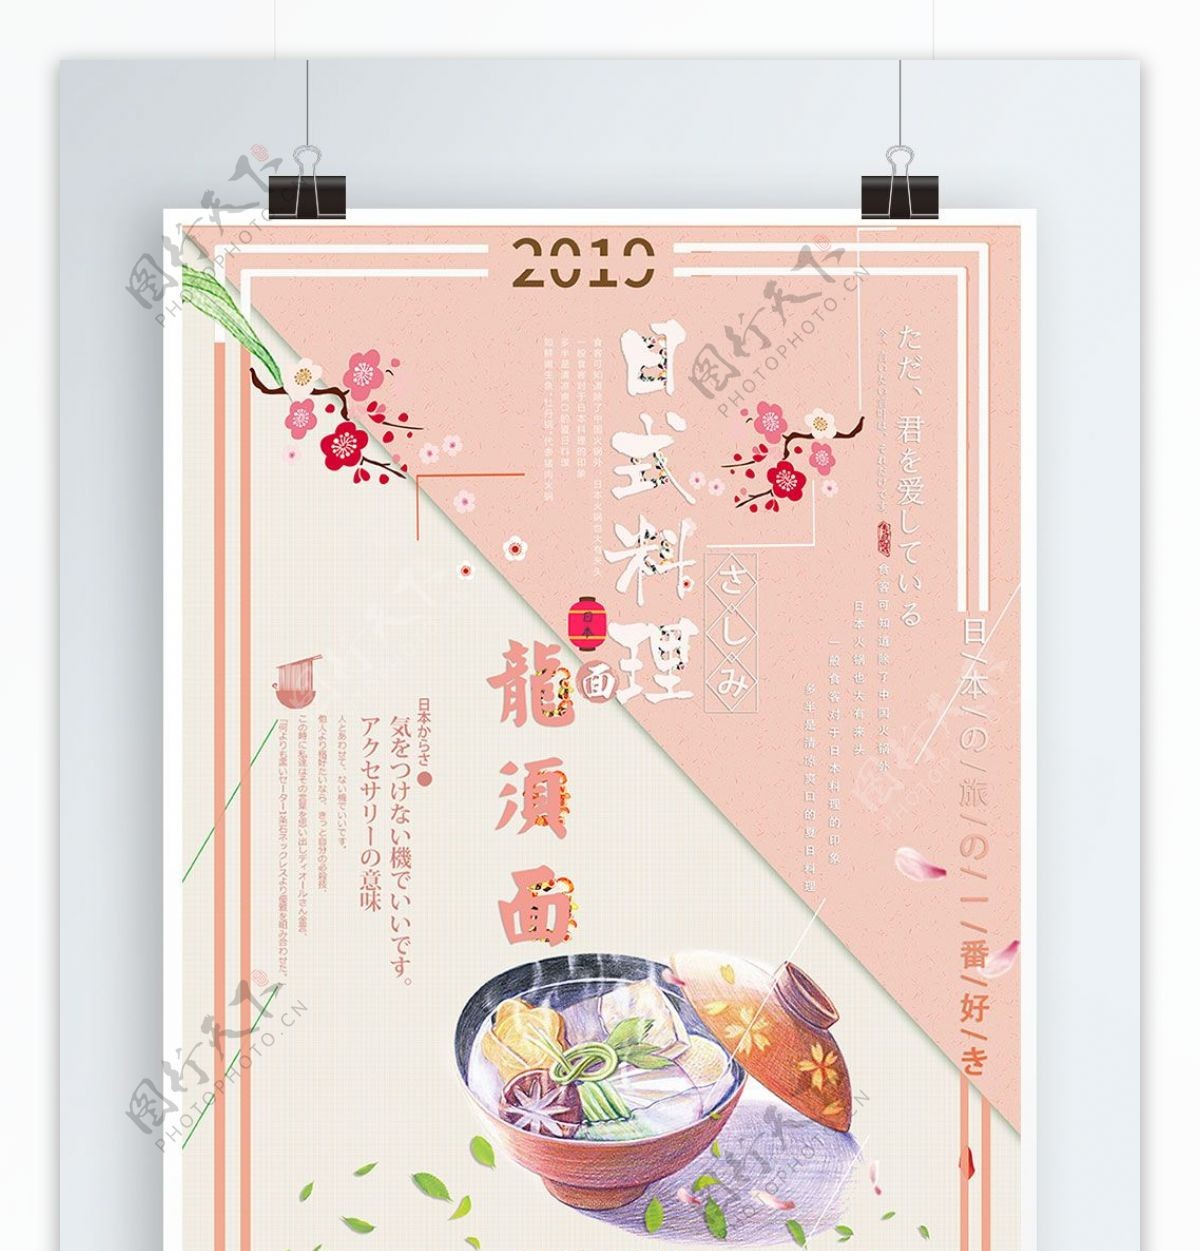 日式料理卡爱唯美小清新宣传海报